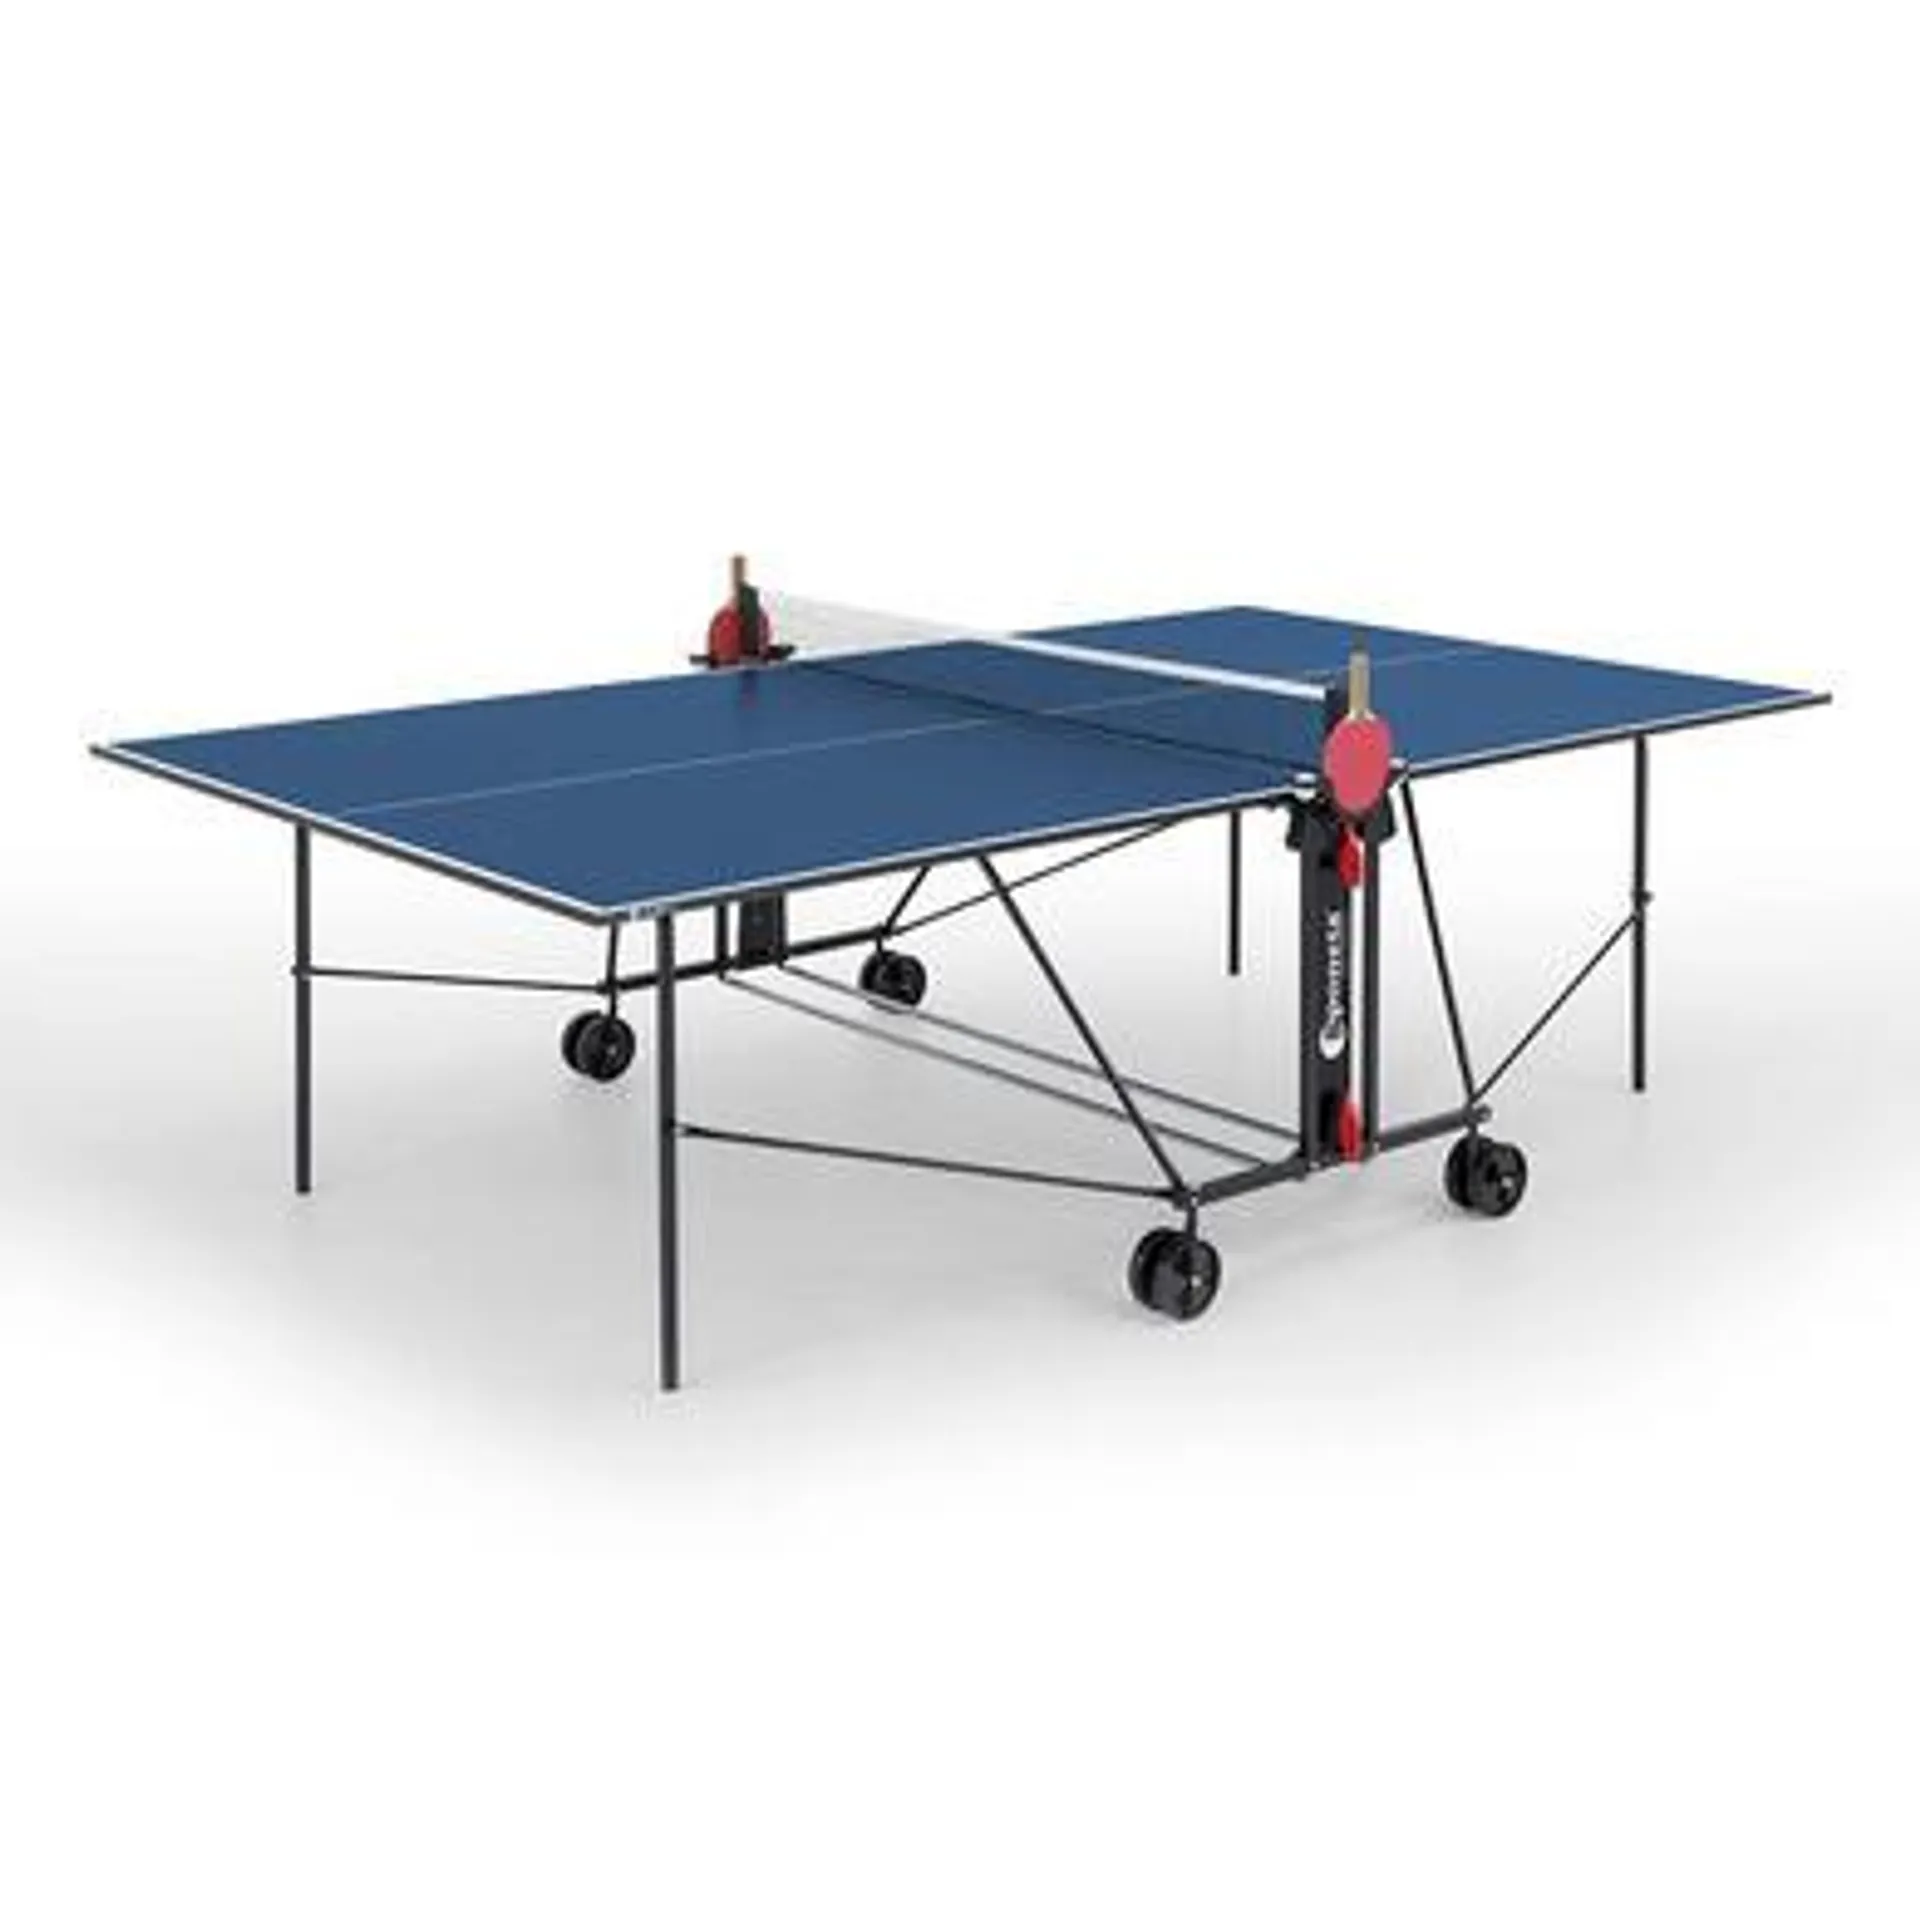 Table de Ping Pong S 1-41i interieure Bleue